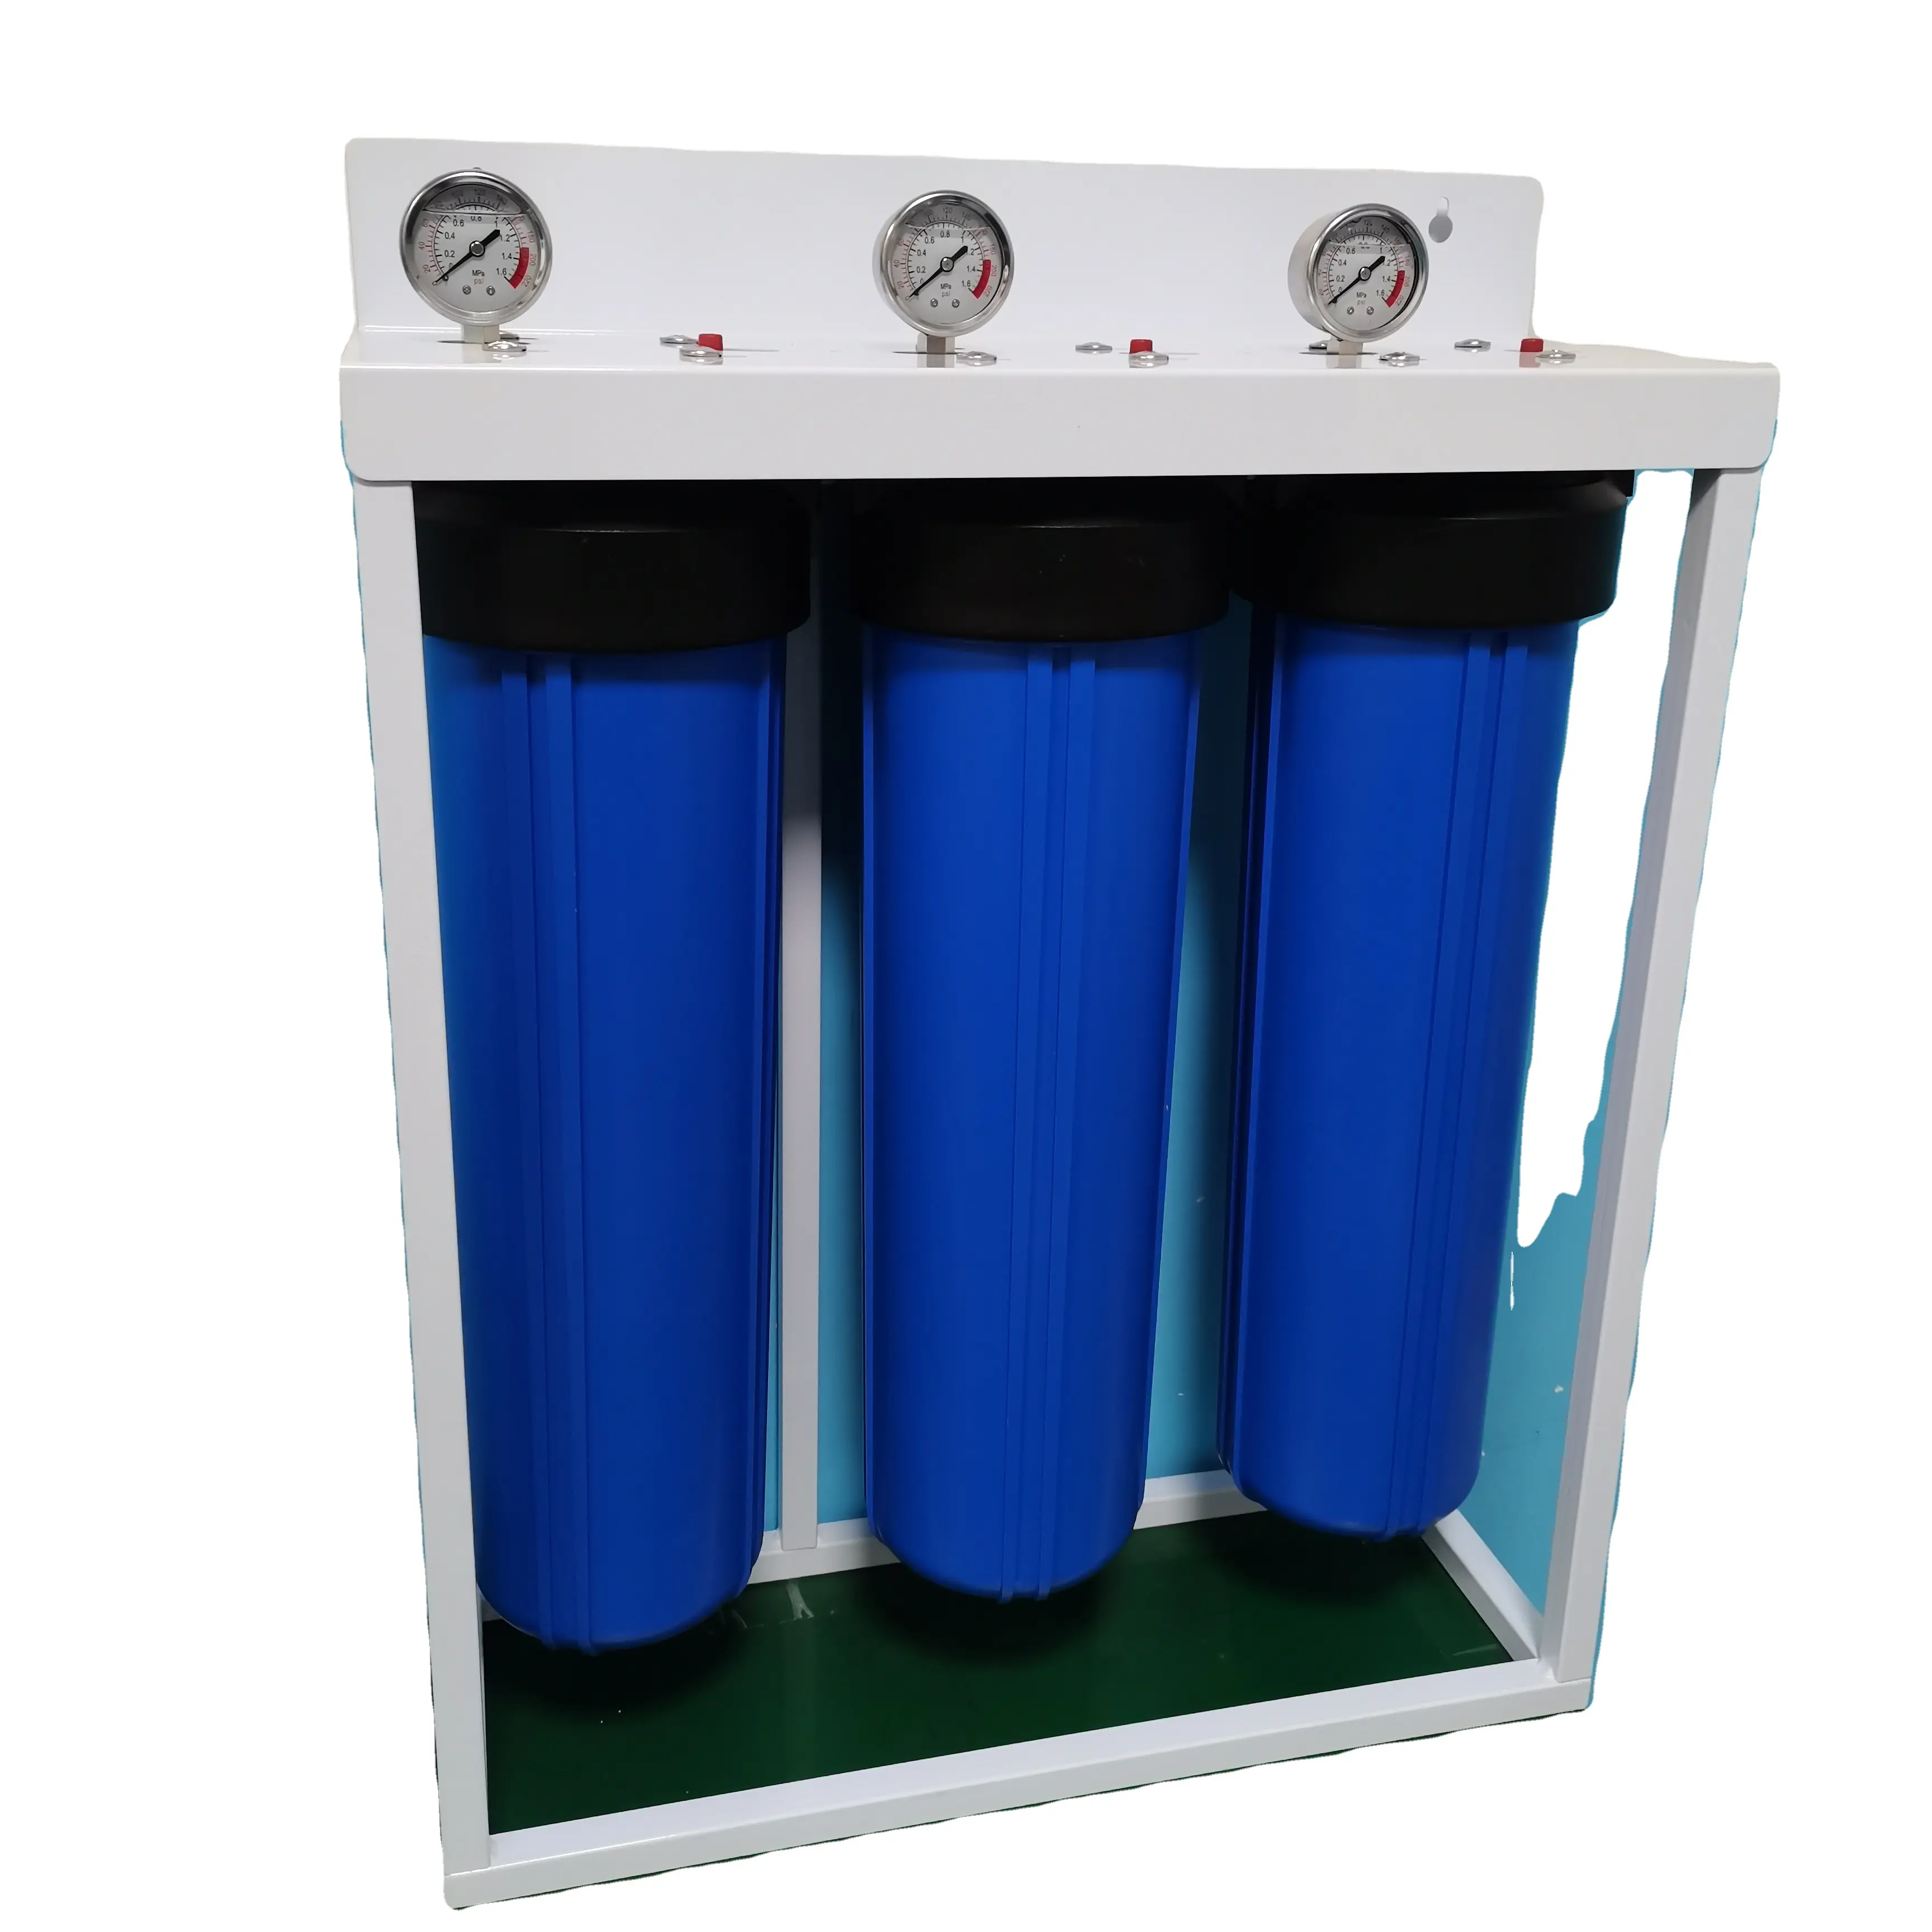 Filtración de agua previa de 2 etapas y 3 etapas para sistemas de filtro de agua domésticos para toda la casa